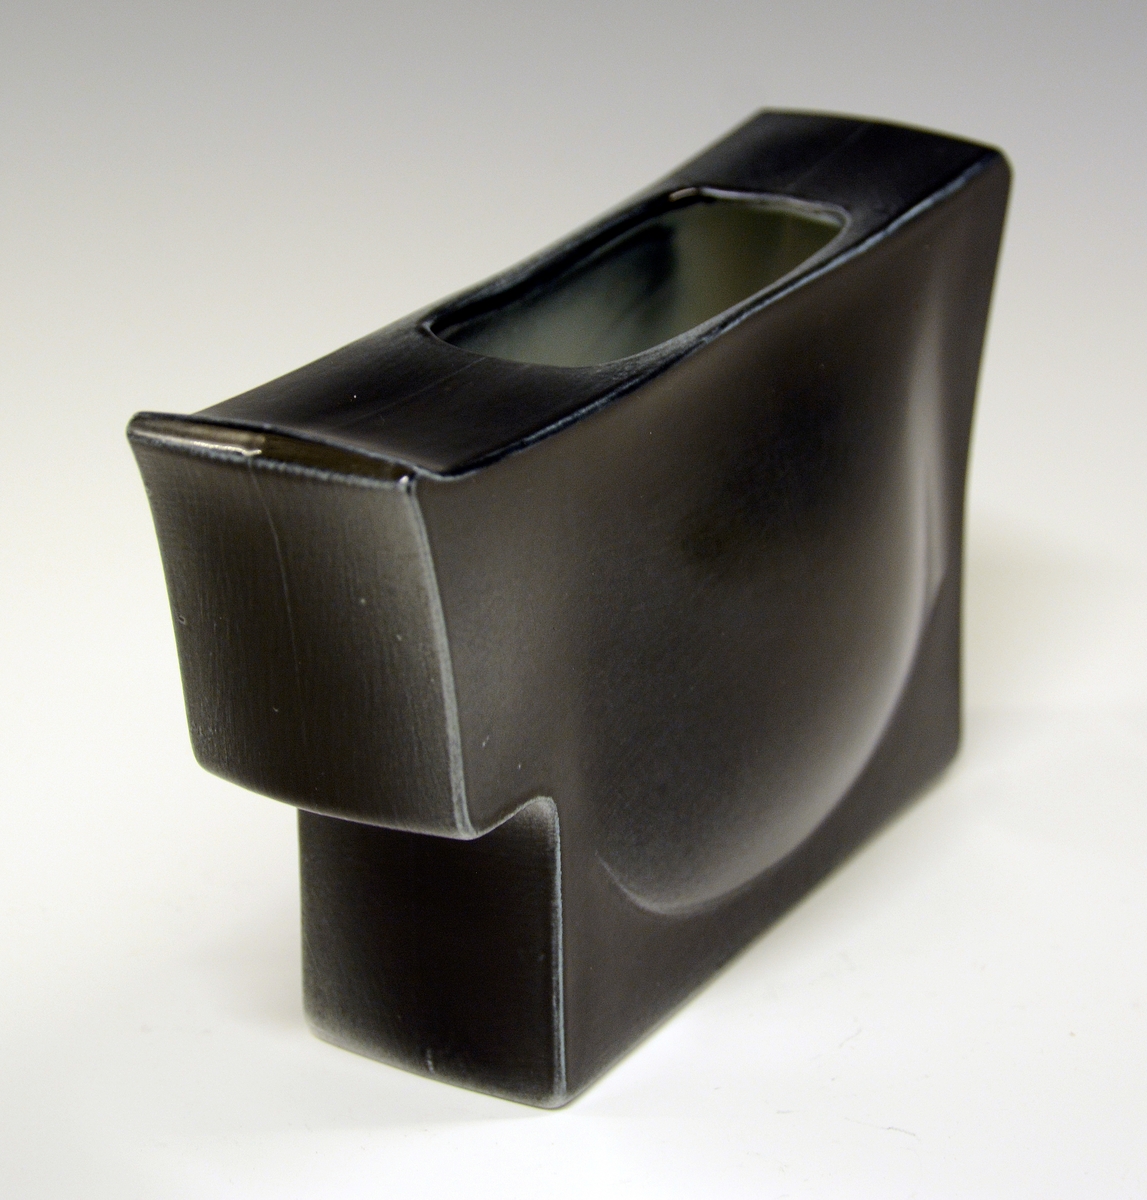 Vase i porselen. Rektangulær form med liten åpning.
Kunstner: Leif Helge Enger.